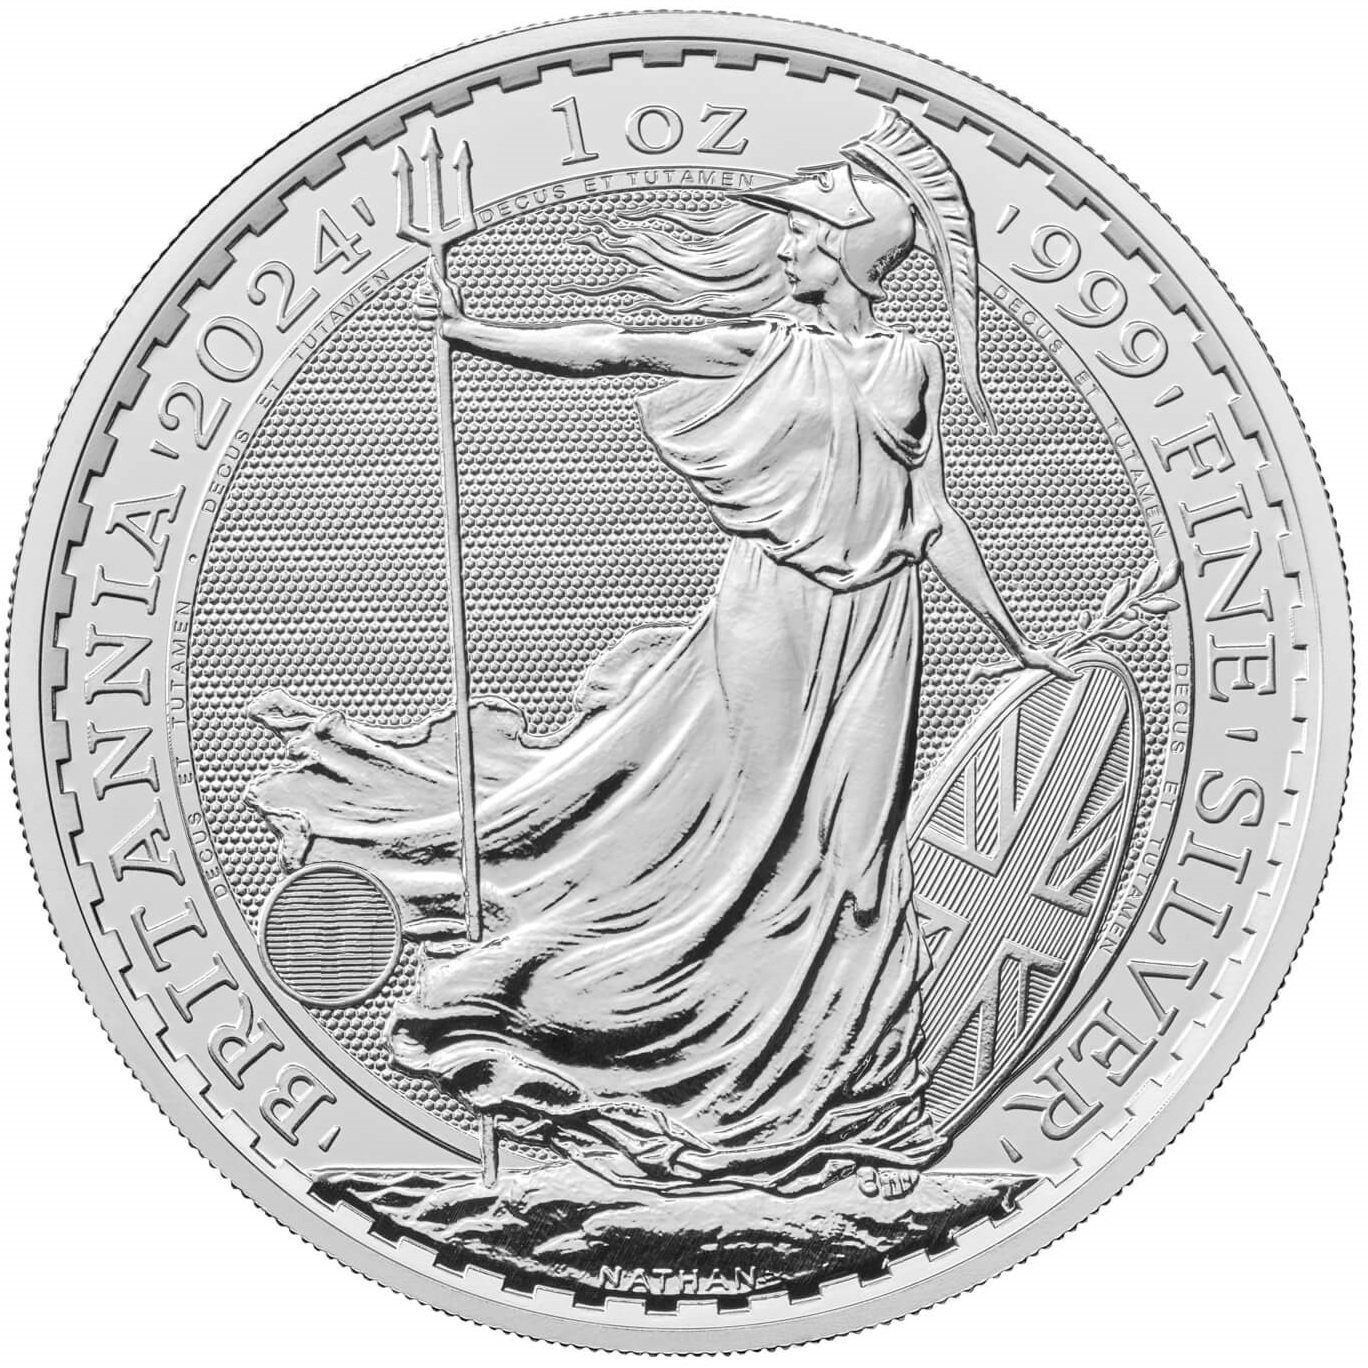 1 oz. Silver Britannia bullion coin